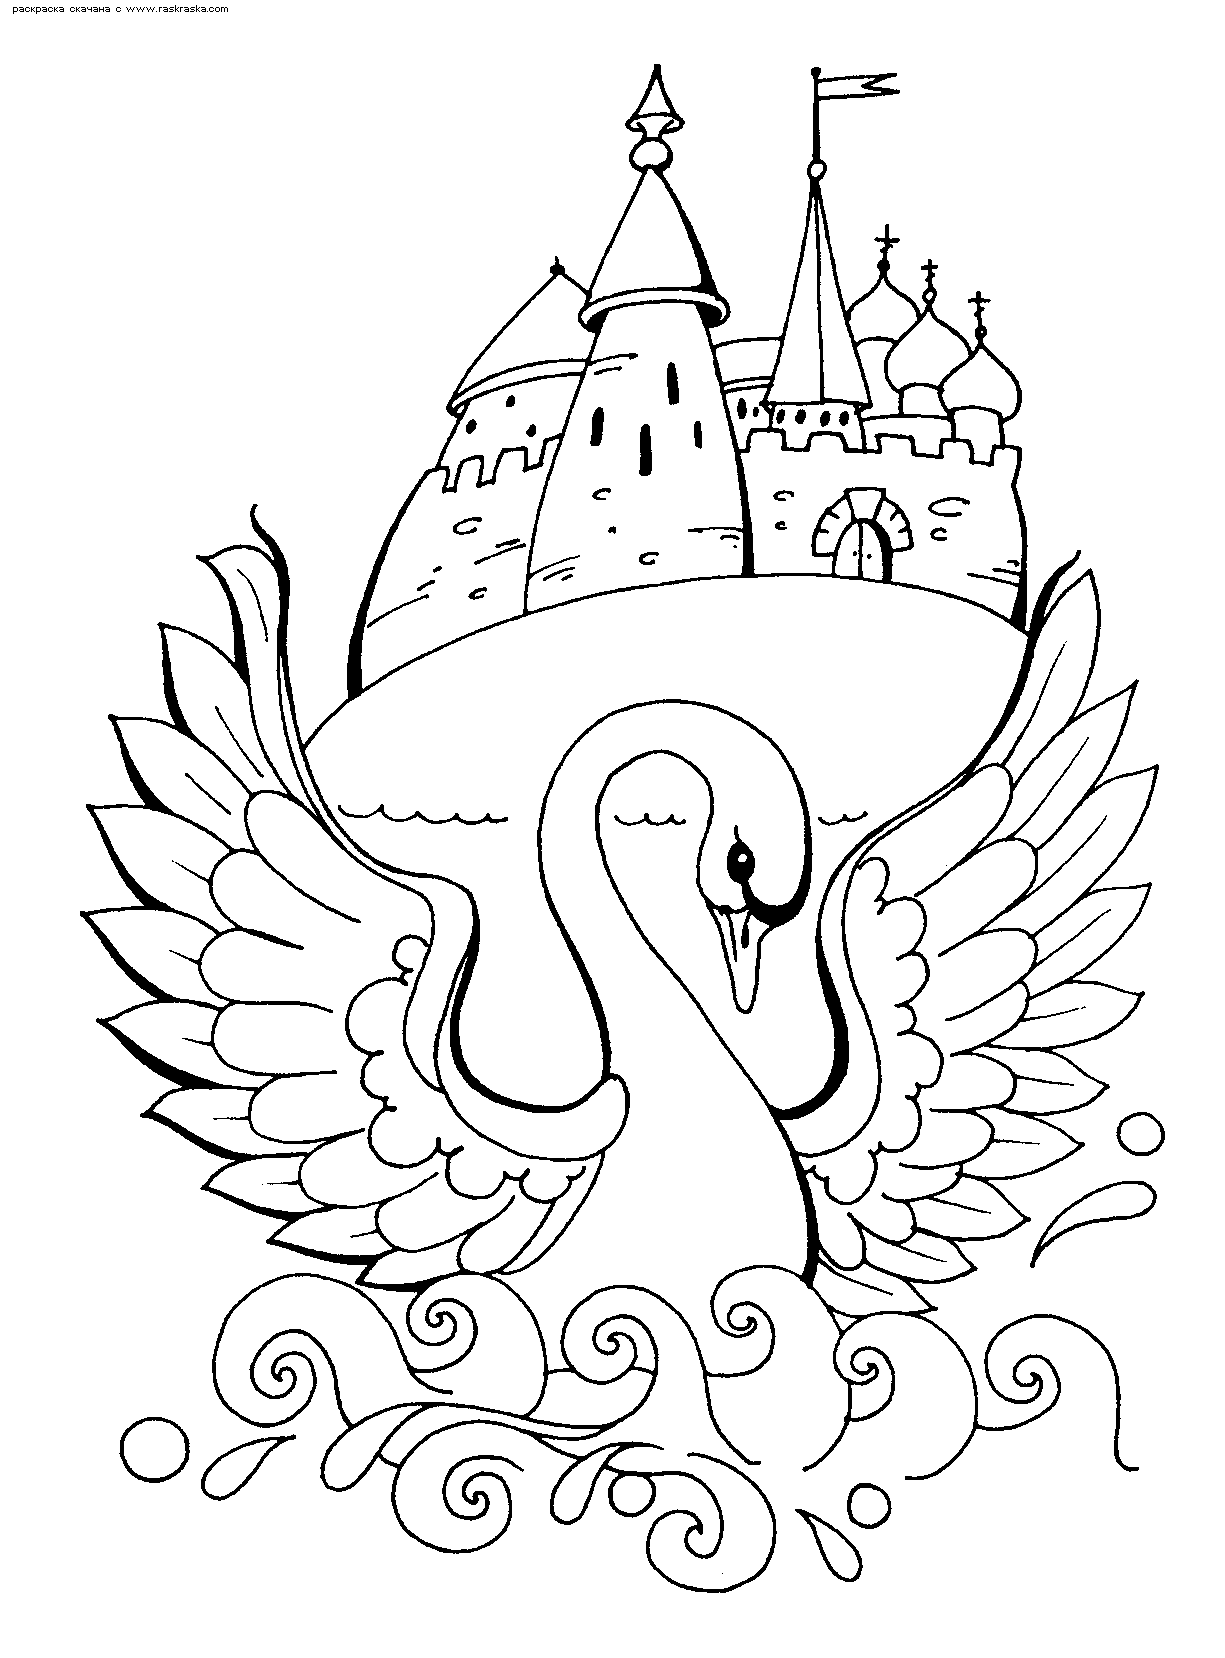  раскраски с принцессой Лебедь для детей   раскраски на тему принцесса Лебедь для мальчиков и девочек. Интересные раскраски с персонажами сказки про принцессу лебедь для детей         